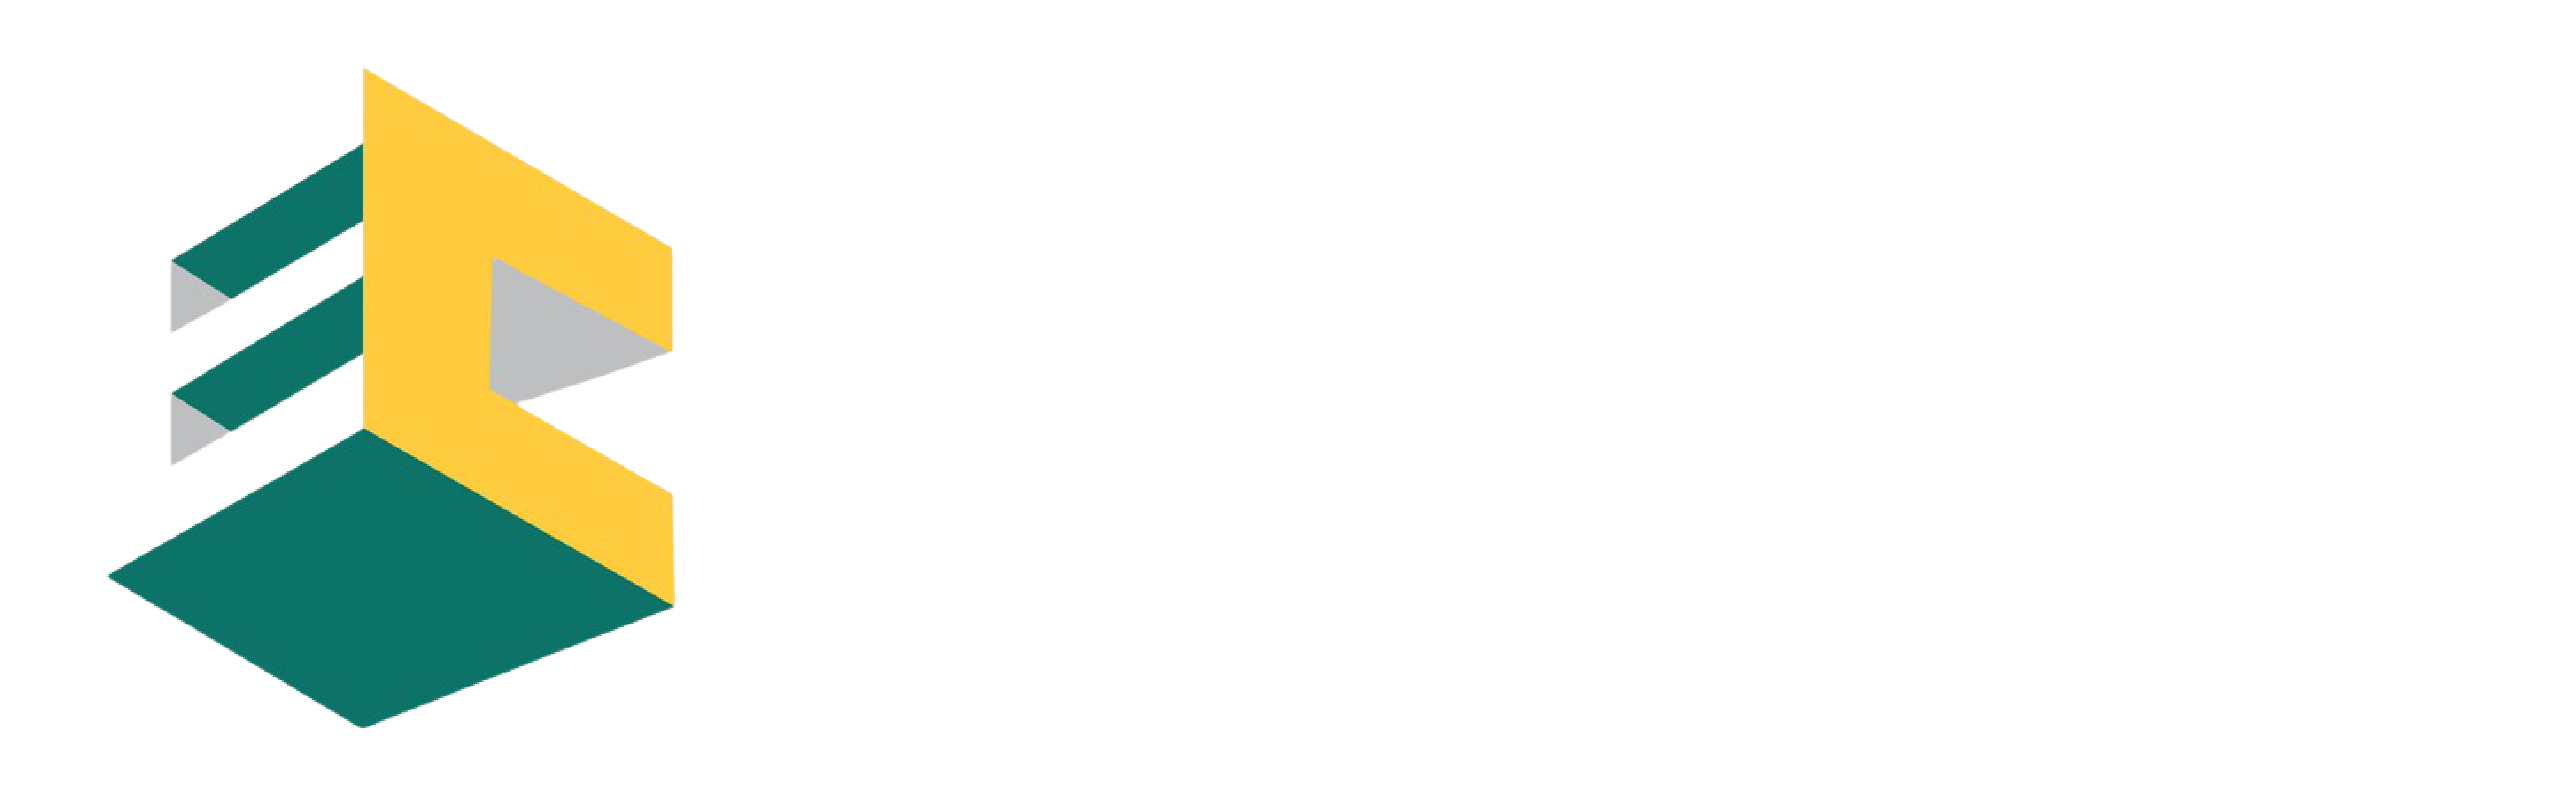 Enterprise Cube Limited